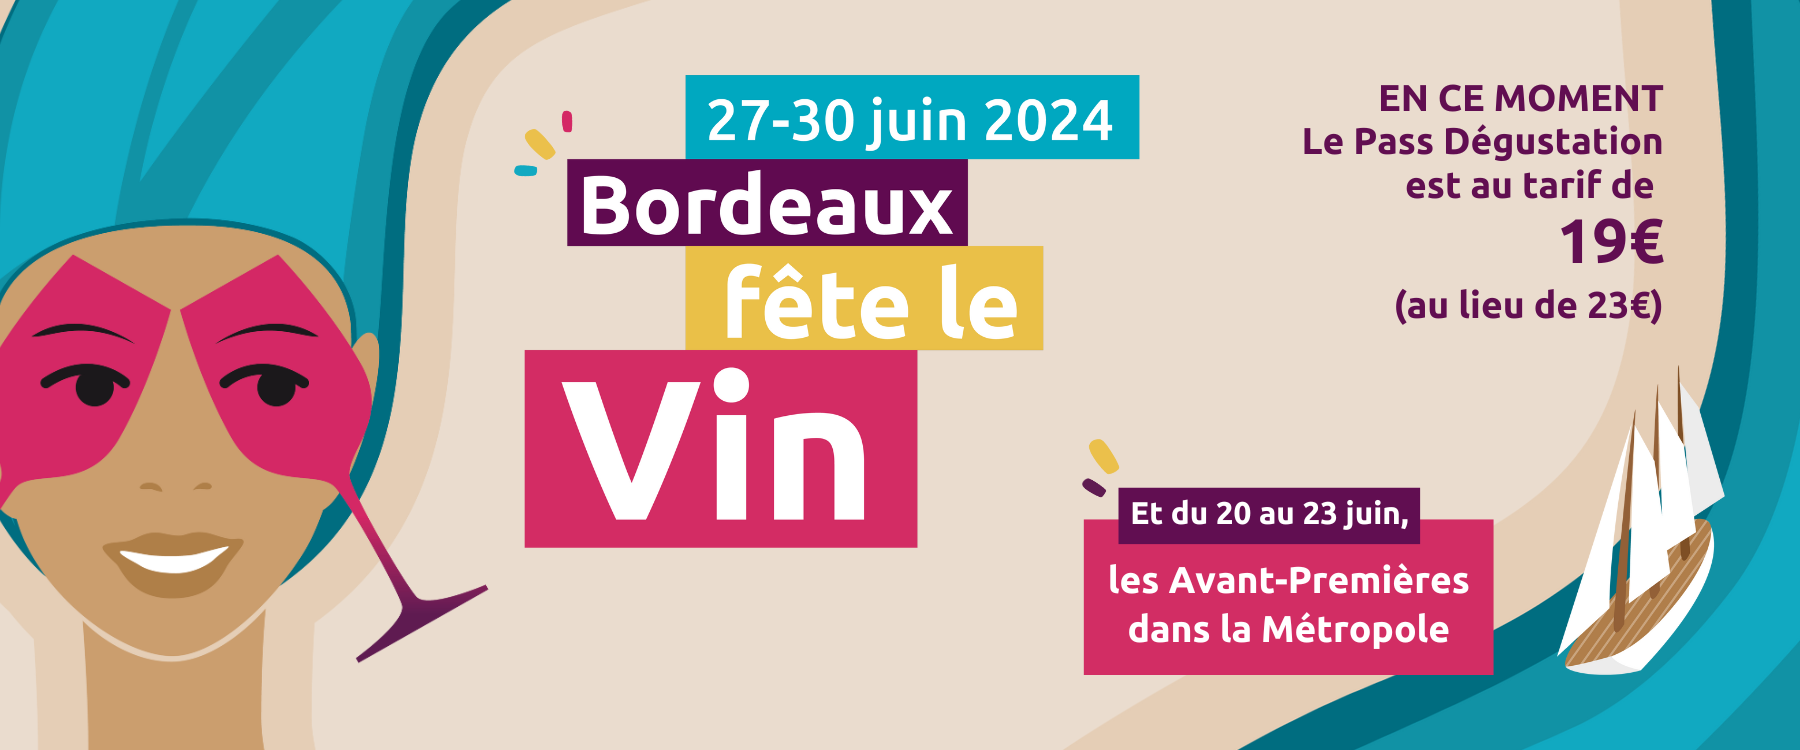 Bordeaux Fête le Vin 2024